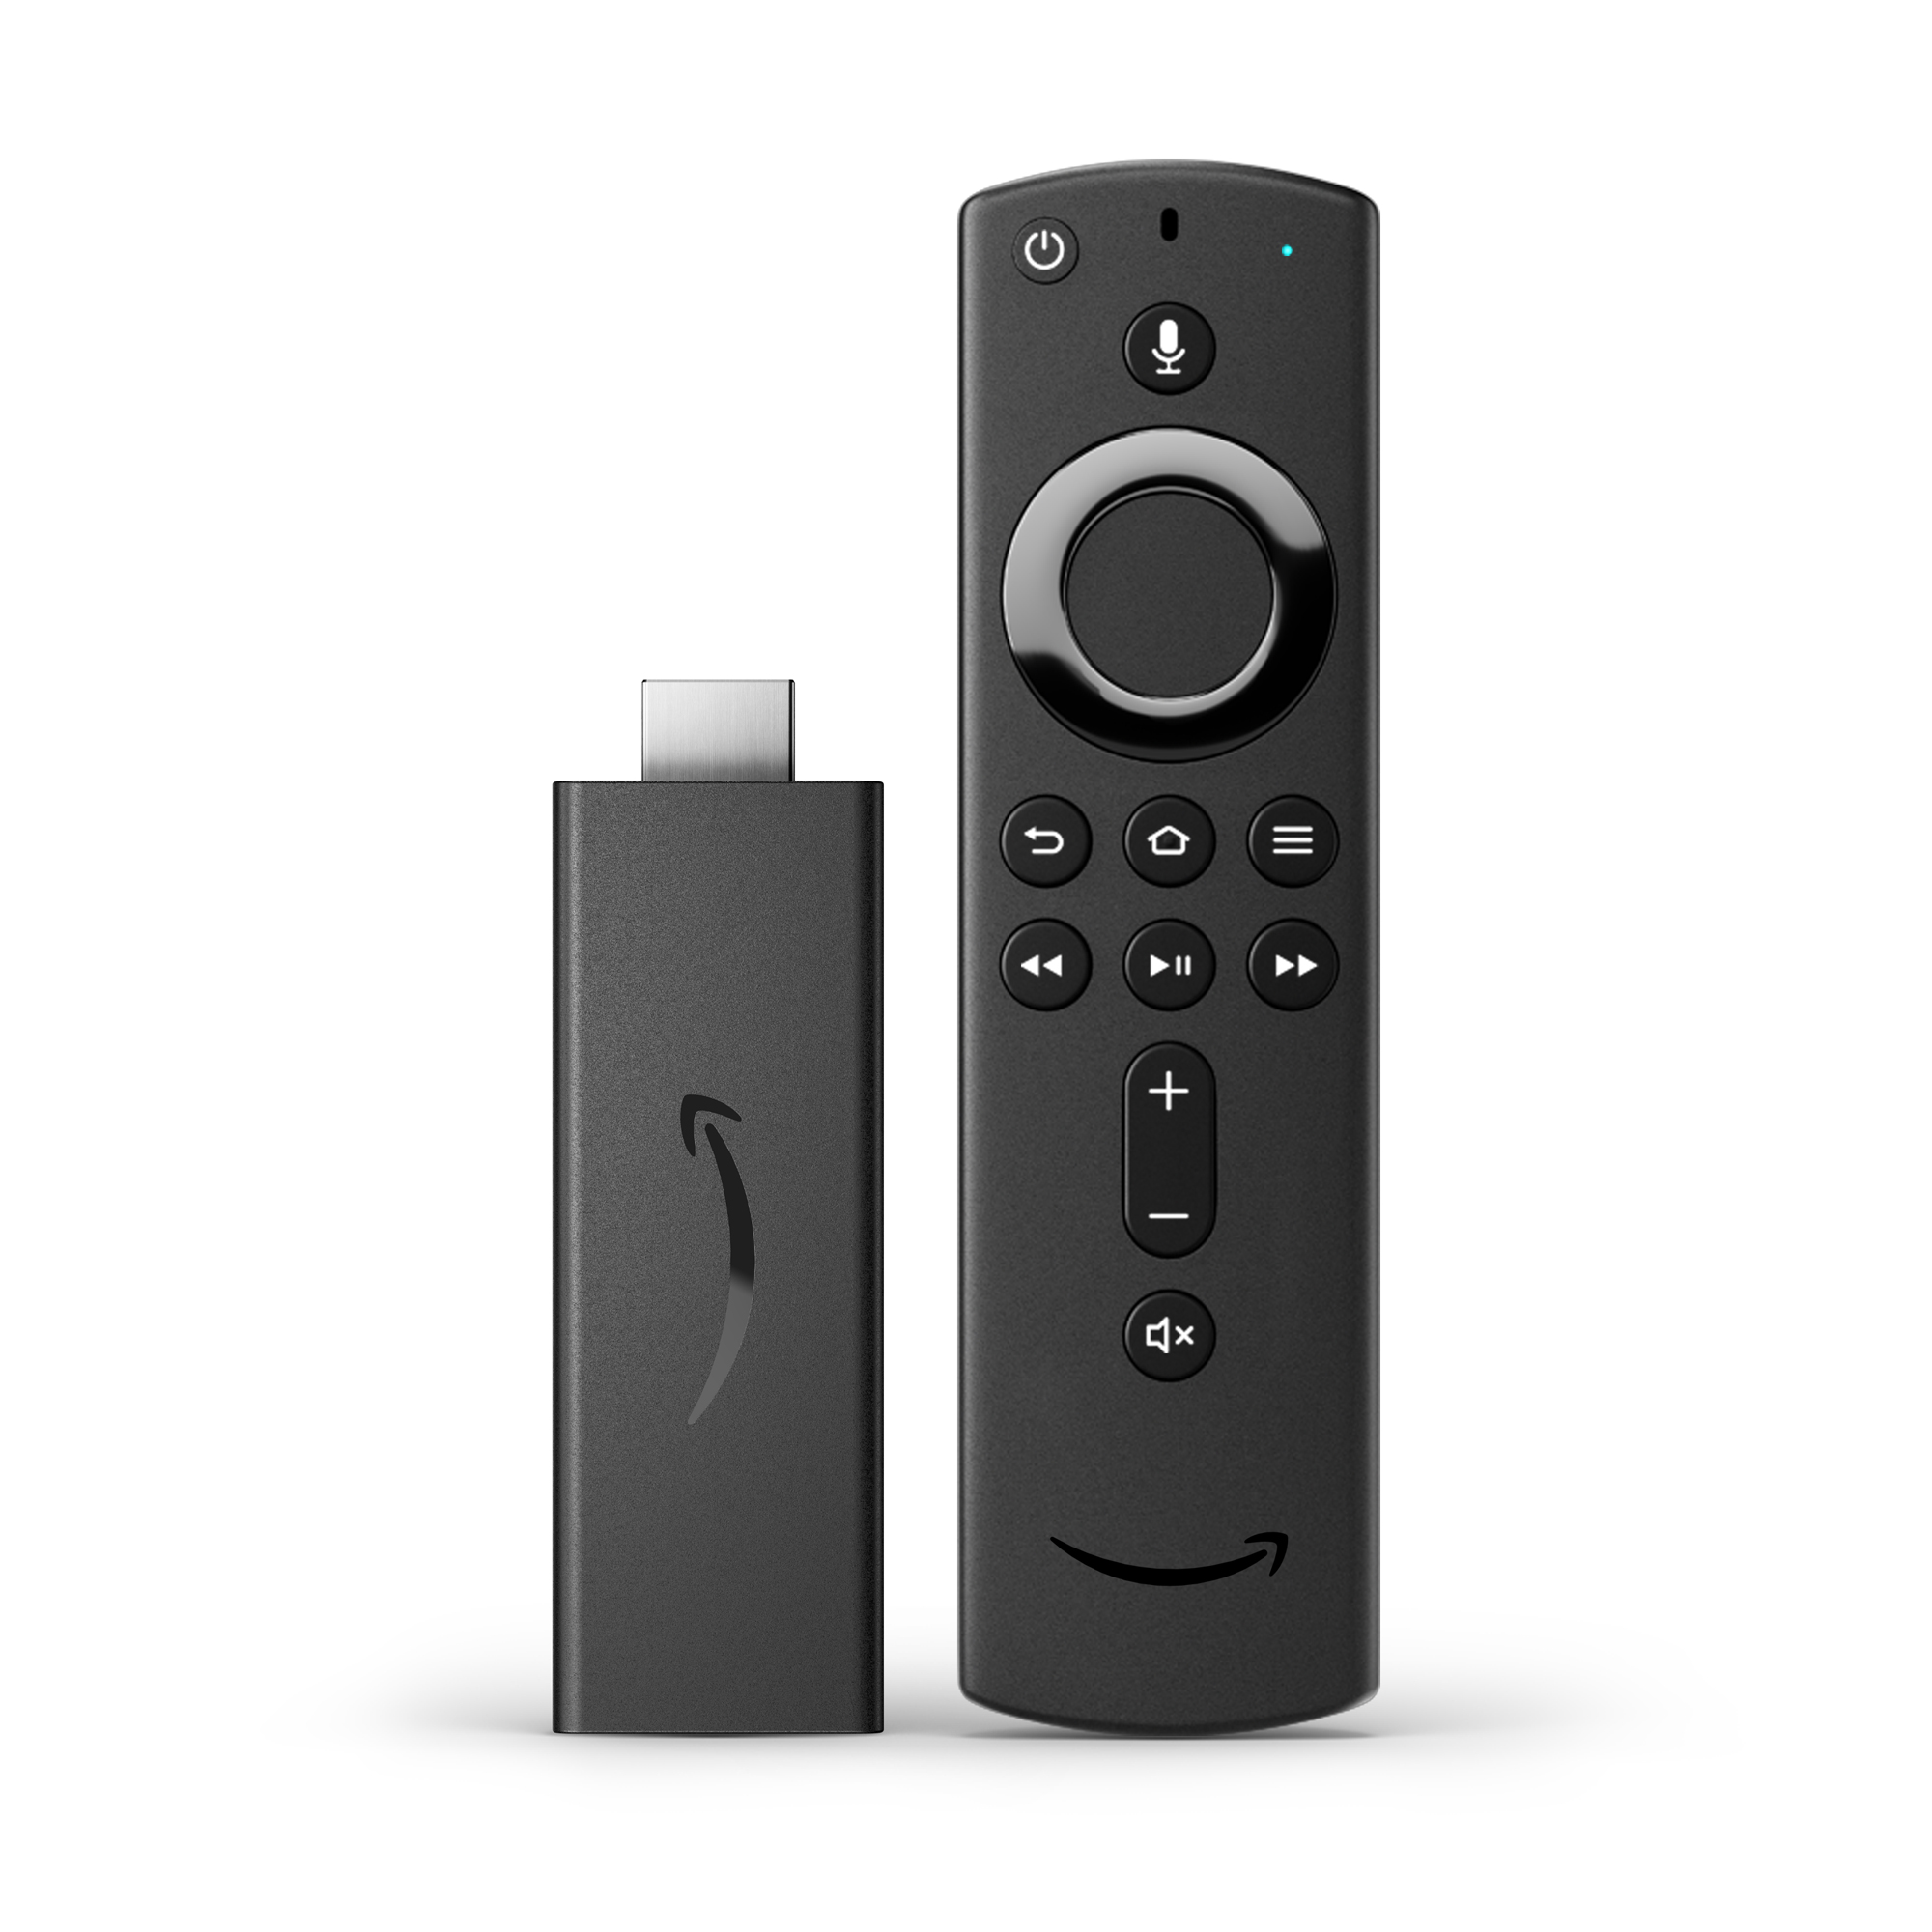 Amazon、性能をさらに強化した新世代の「Amazon Fire TV Stick」を発表 